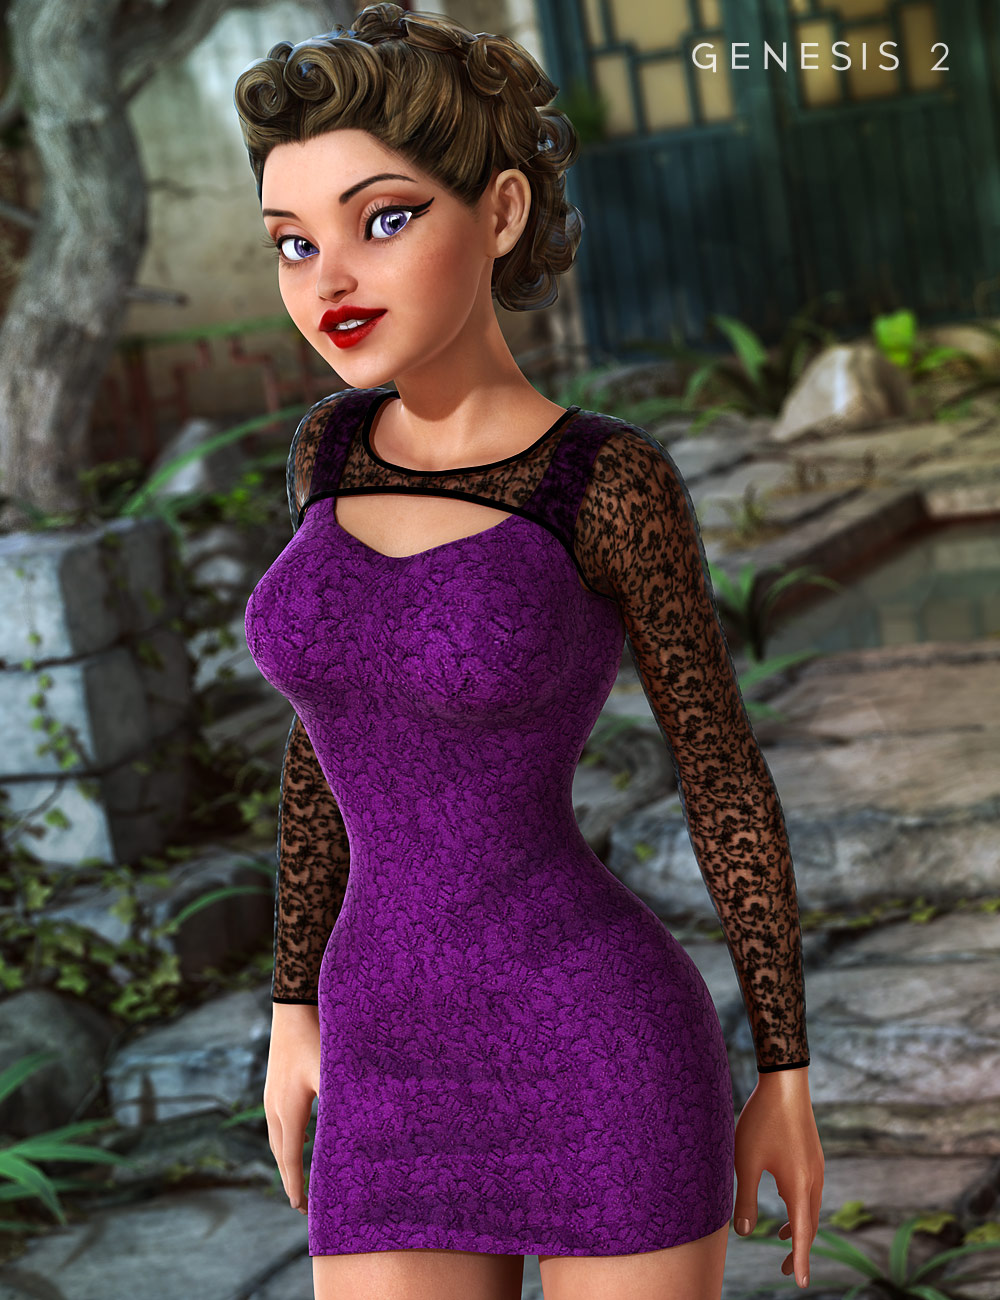 Little Black Dress - Not So Black Add-on by: bucketload3d, 3D Models by Daz 3D